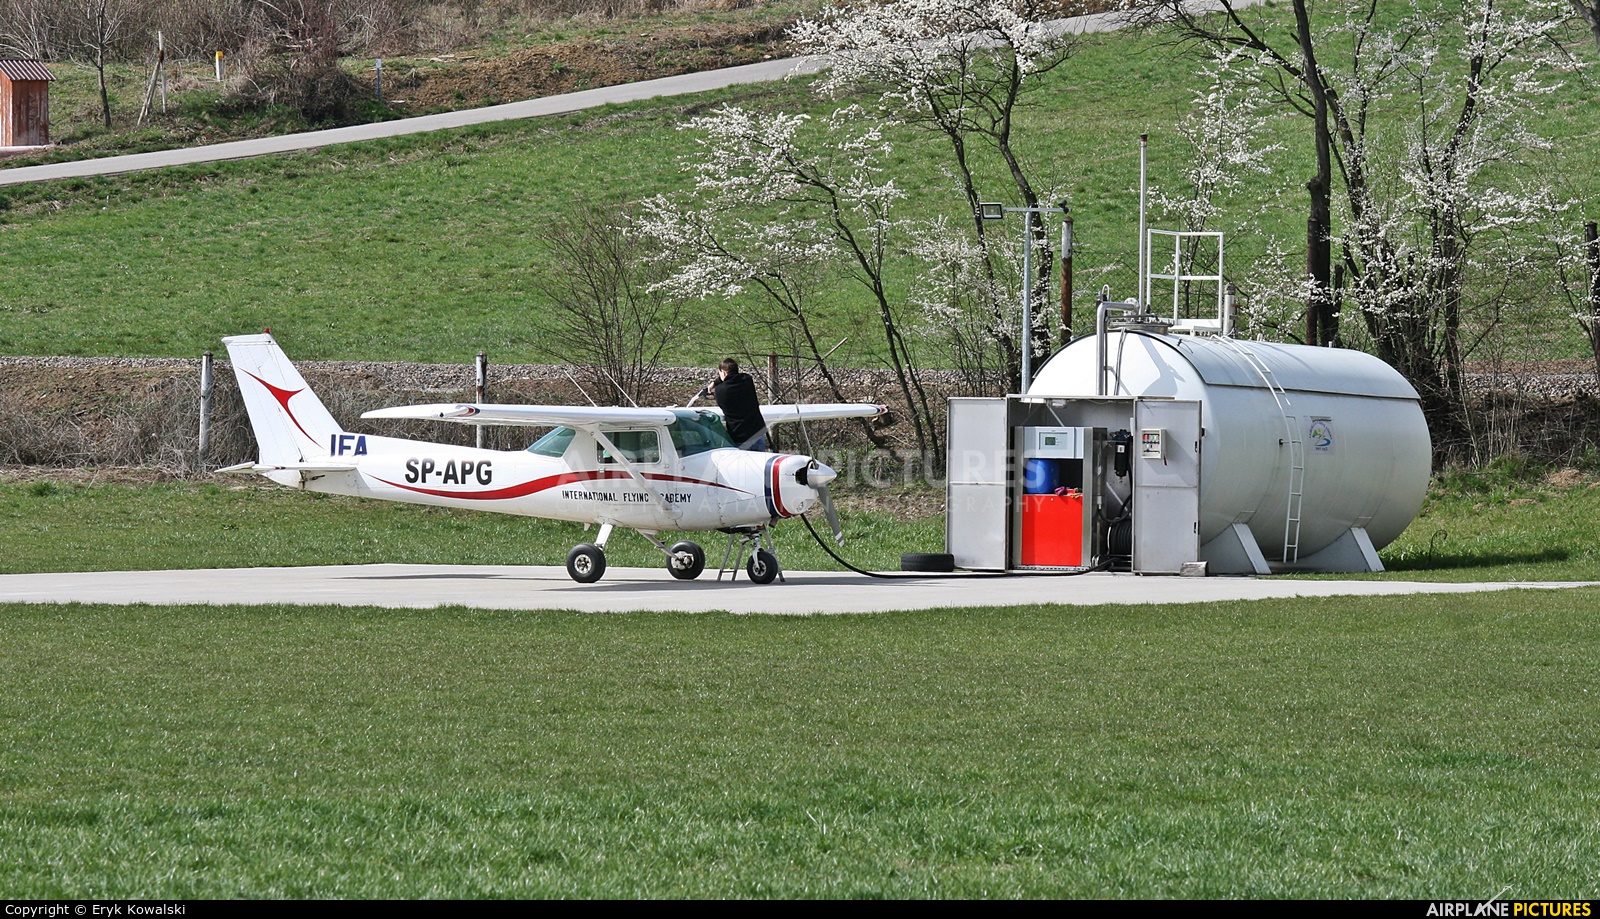 Aeroklub Podhalański SP-APG aircraft at Nowy Sącz - Łososina